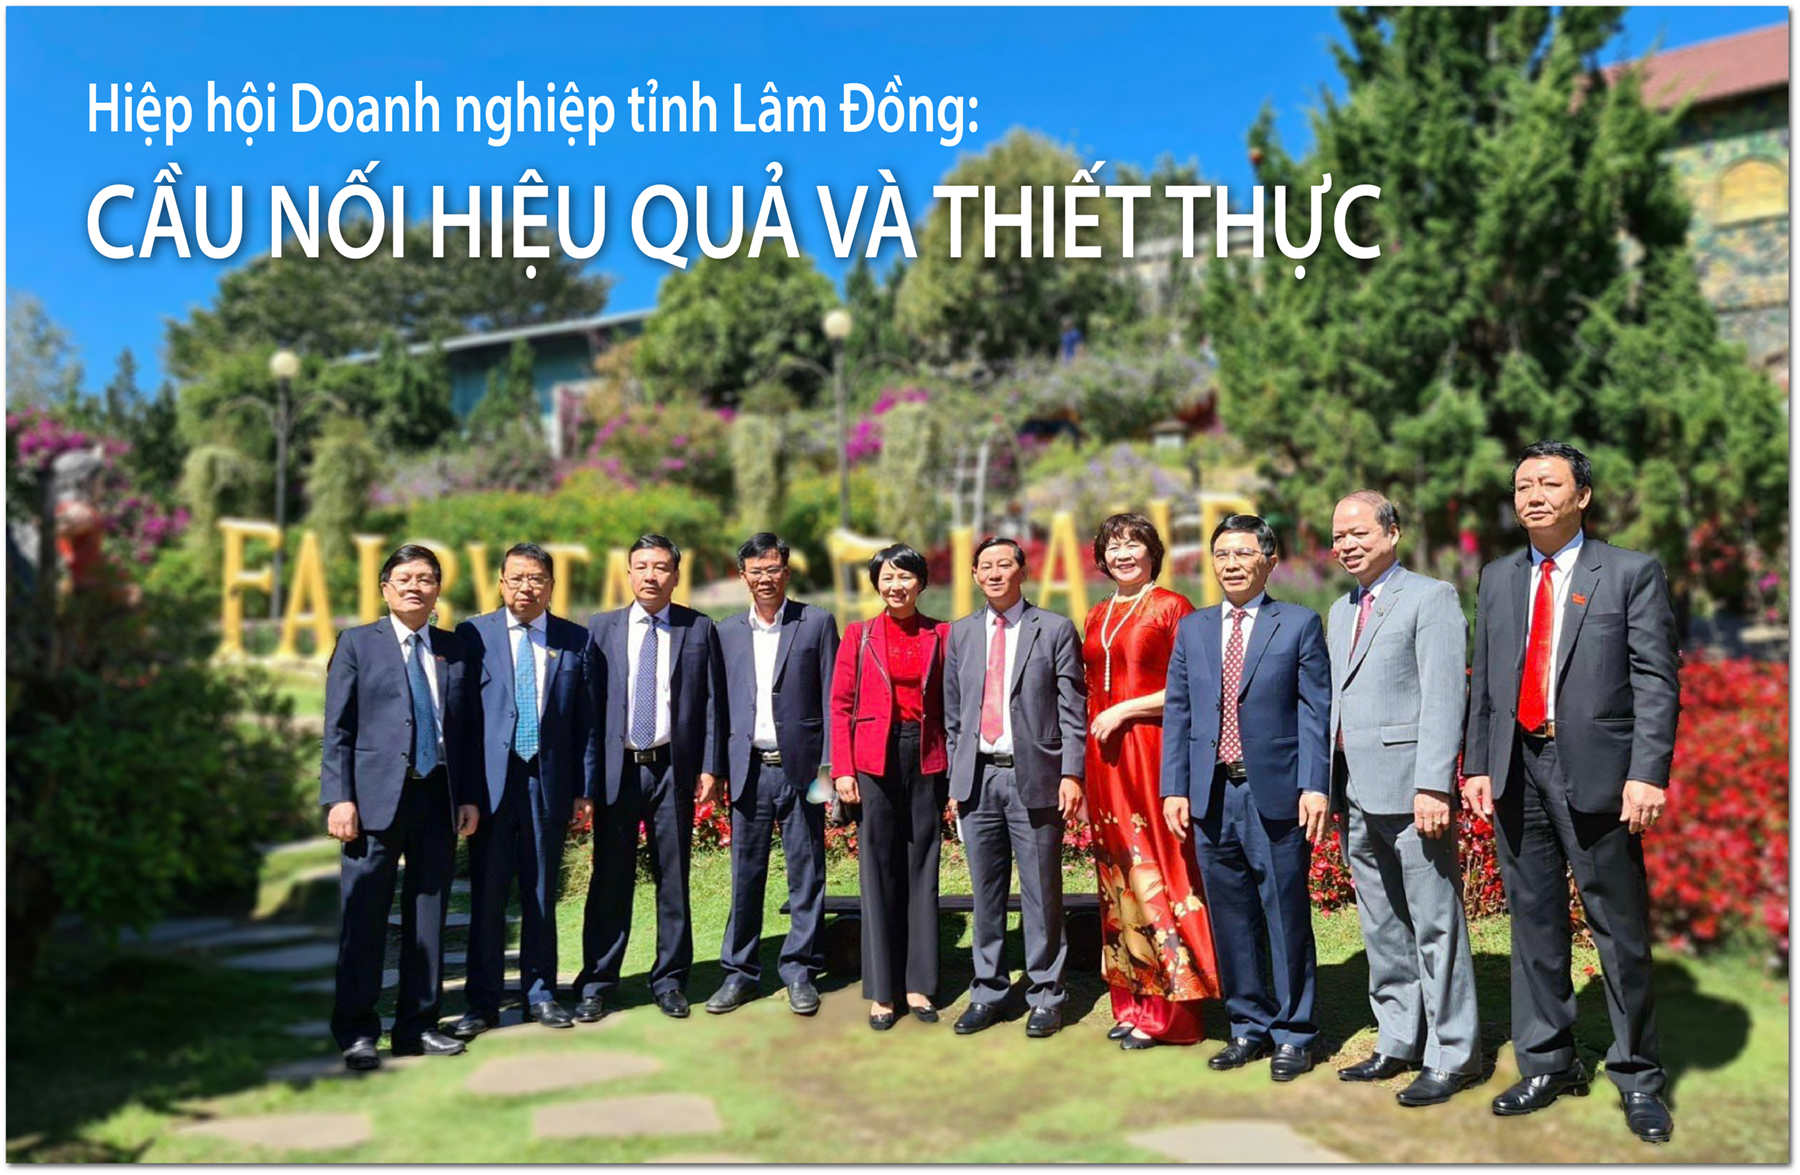 Đoàn công tác do Bí thư Tỉnh ủy Lâm Đồng – Trần Đức Quận dẫn đầu đến thăm và chúc Tết Công ty TNHH Vĩnh Tiến – đơn vị có nhiều thành tích trong hoạt động sản xuất kinh doanh